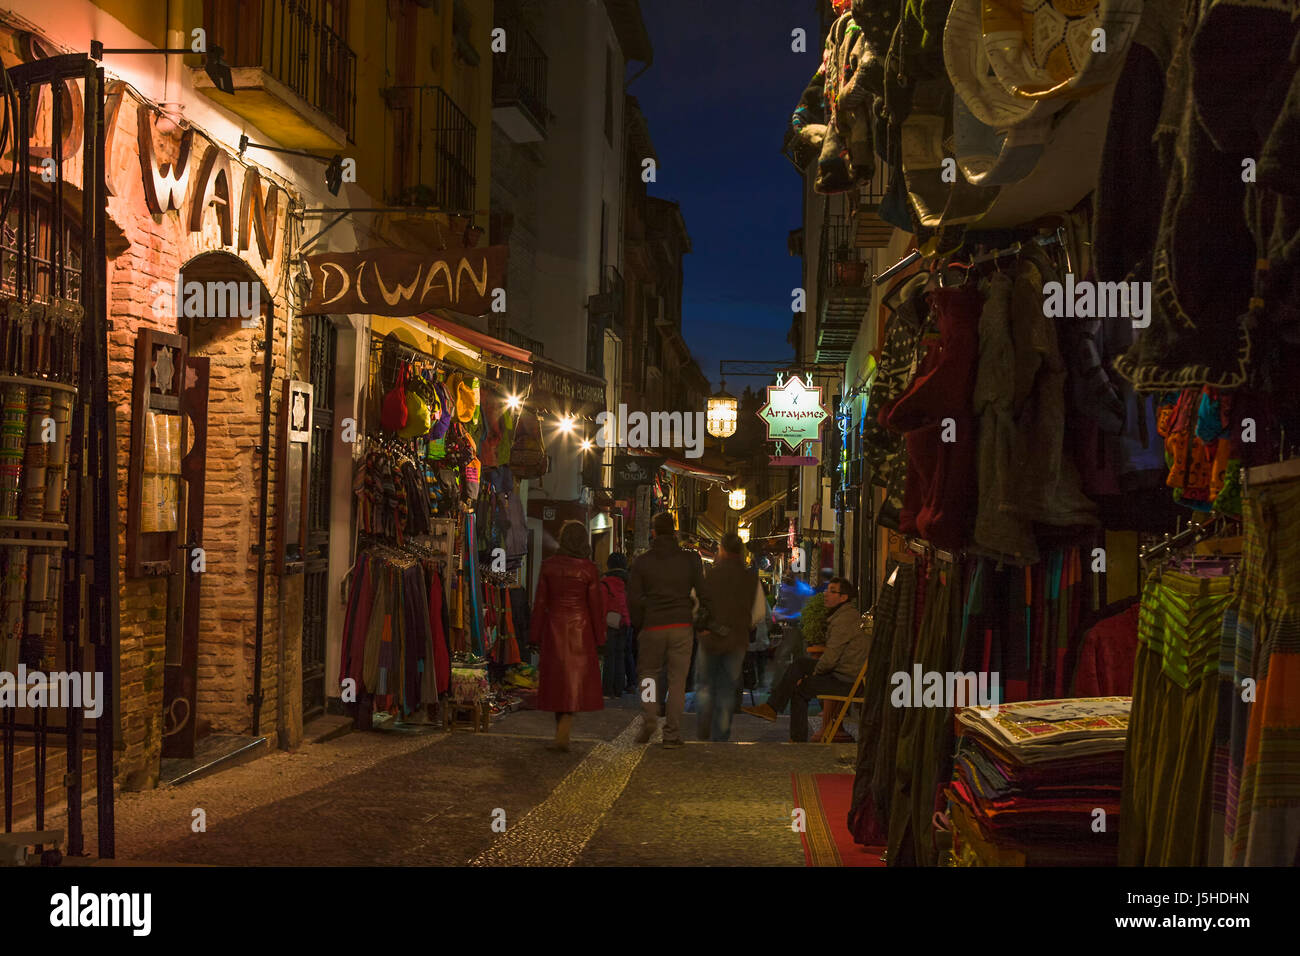 Calle Calderería Nueva, El Albaicín, Granada, Spain at night: a line of tourist souvenir shops Stock Photo